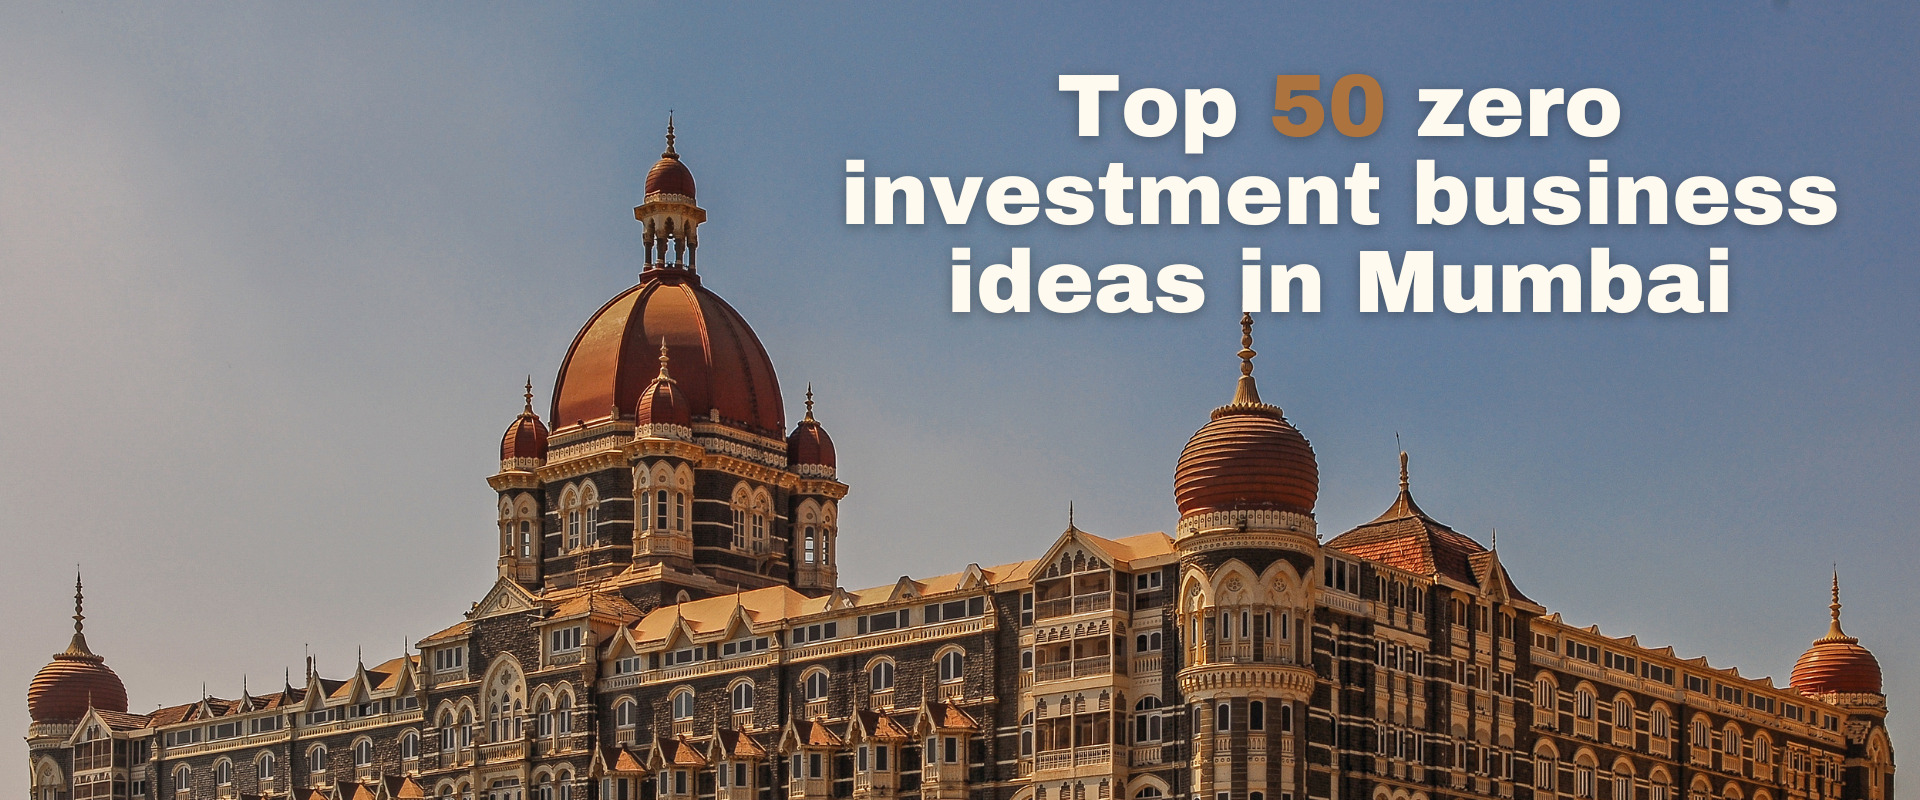 Top 50 zero investment business ideas in Mumbai